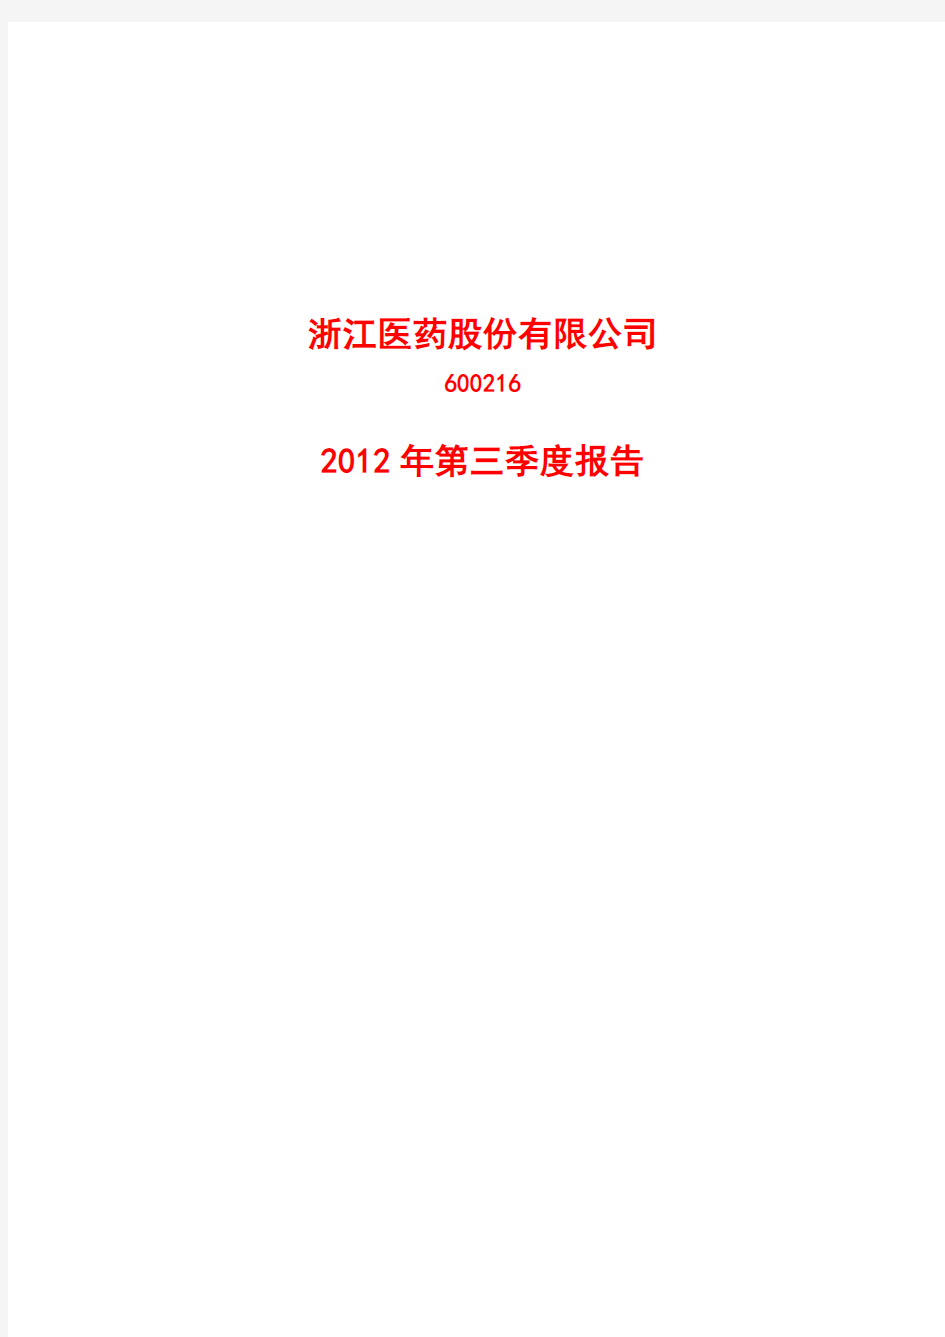 2012年第三季度报告